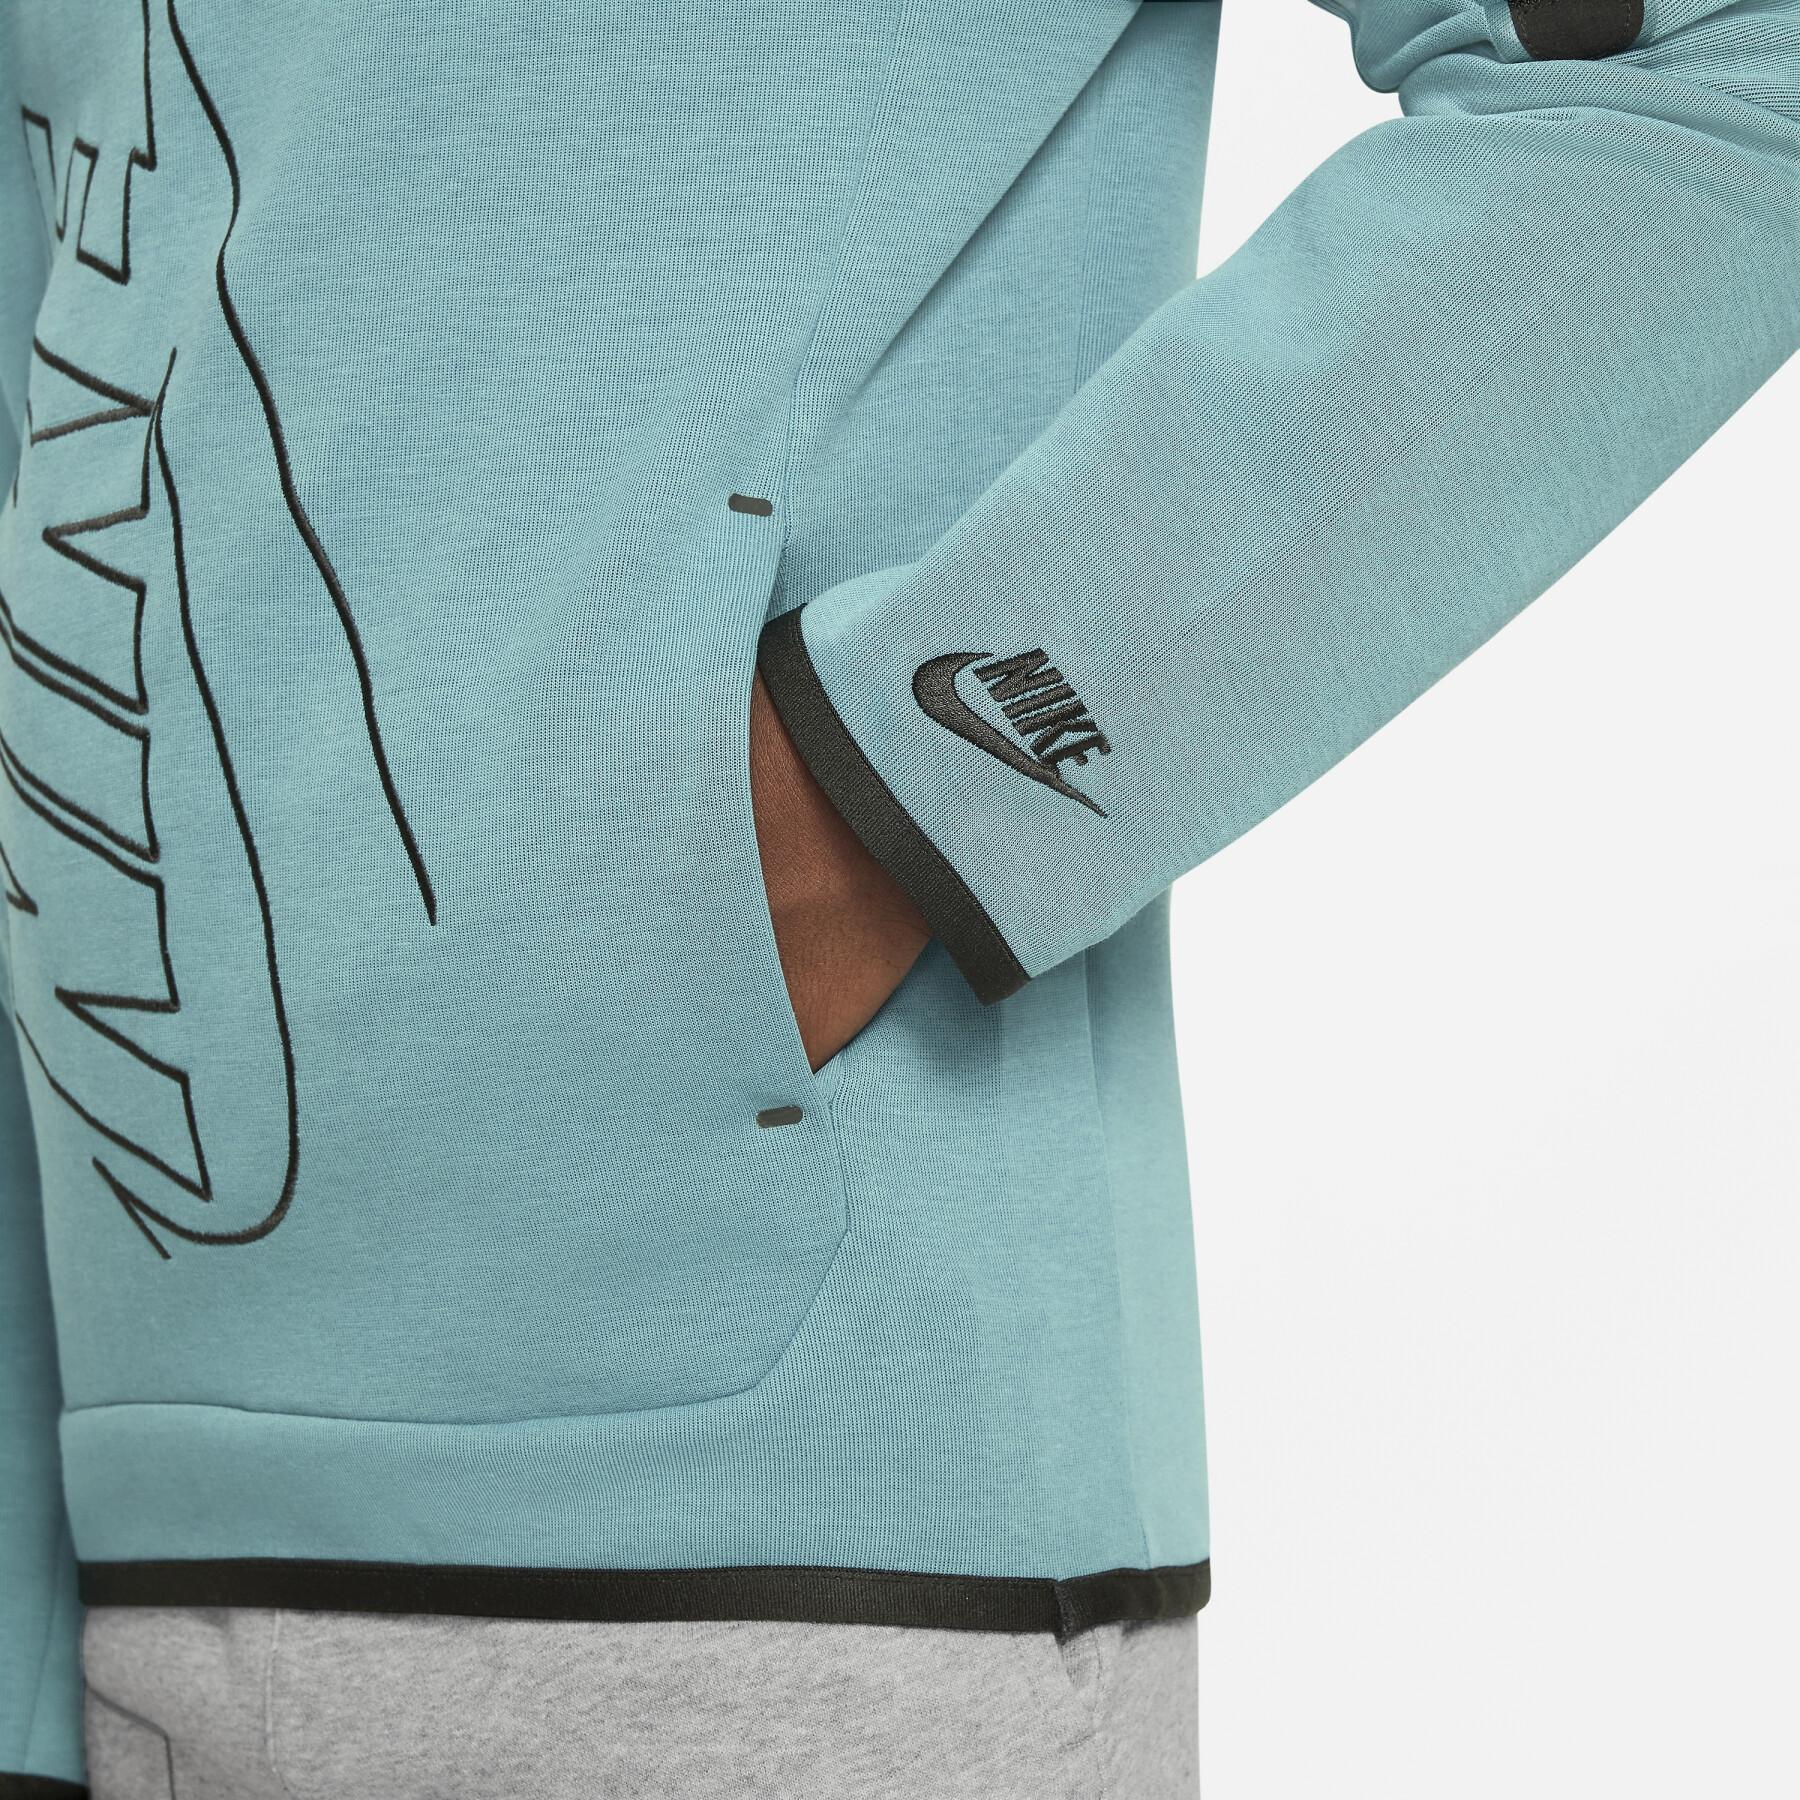 Sweatshirt kinderkapje Nike Tech Fleece HBR Essential